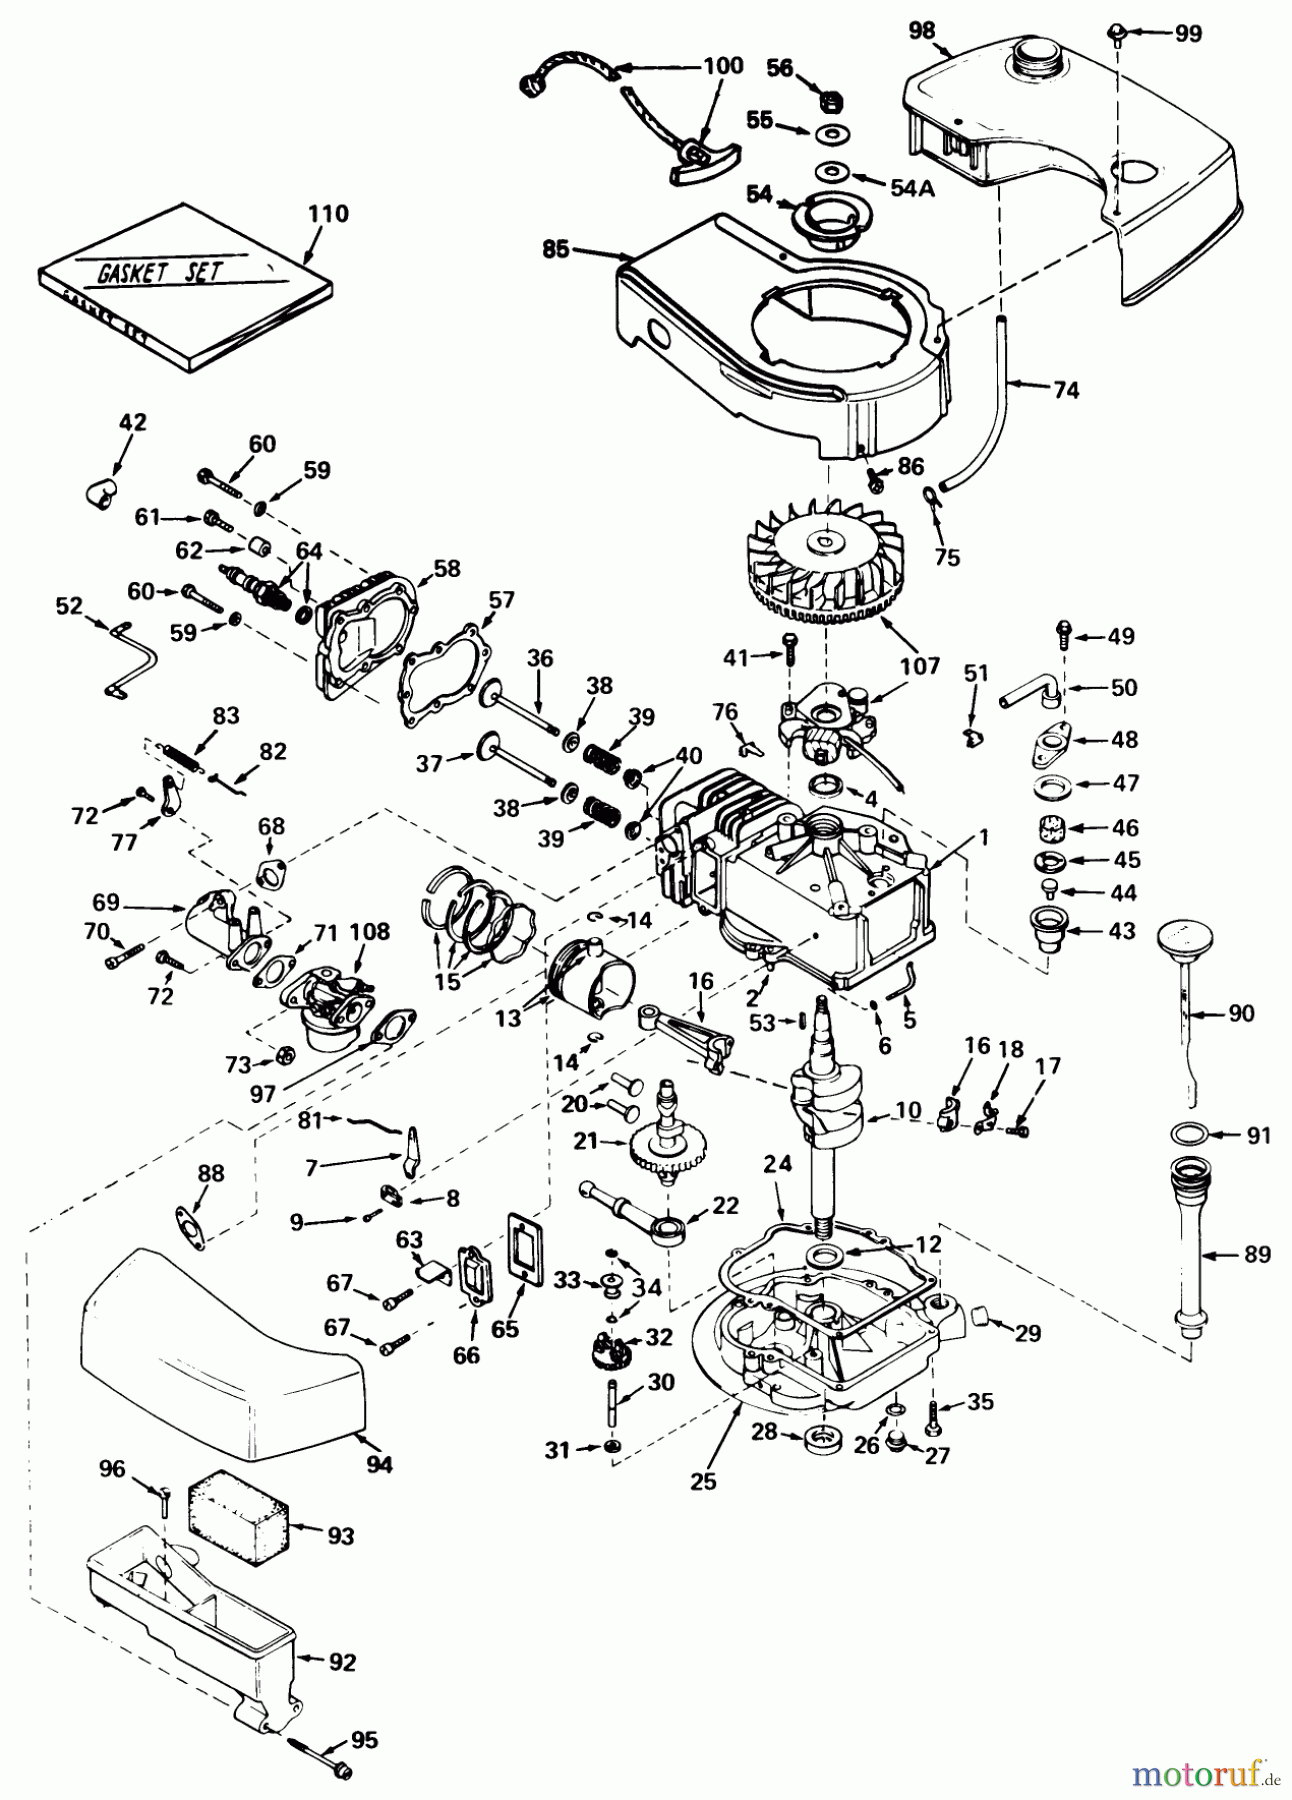  Toro Neu Mowers, Walk-Behind Seite 1 20696 - Toro Lawnmower, 1976 (6000001-7999999) ENGINE TECUMSEH MODEL NO. TNT 120-12004